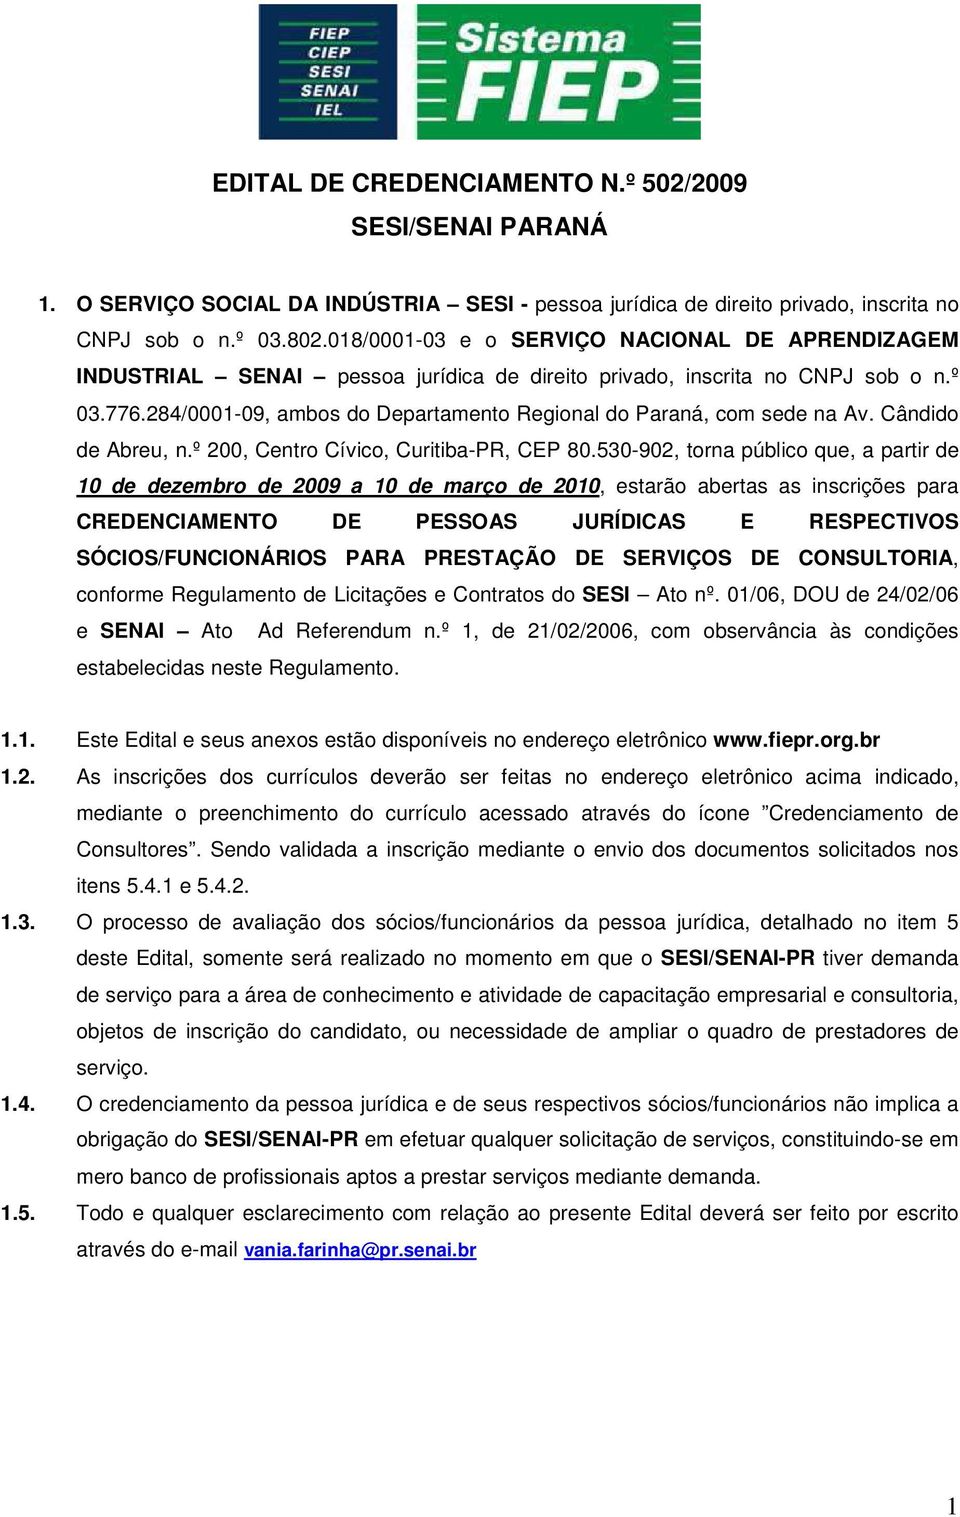 284/0001-09, ambos do Departamento Regional do Paraná, com sede na Av. Cândido de Abreu, n.º 200, Centro Cívico, Curitiba-PR, CEP 80.